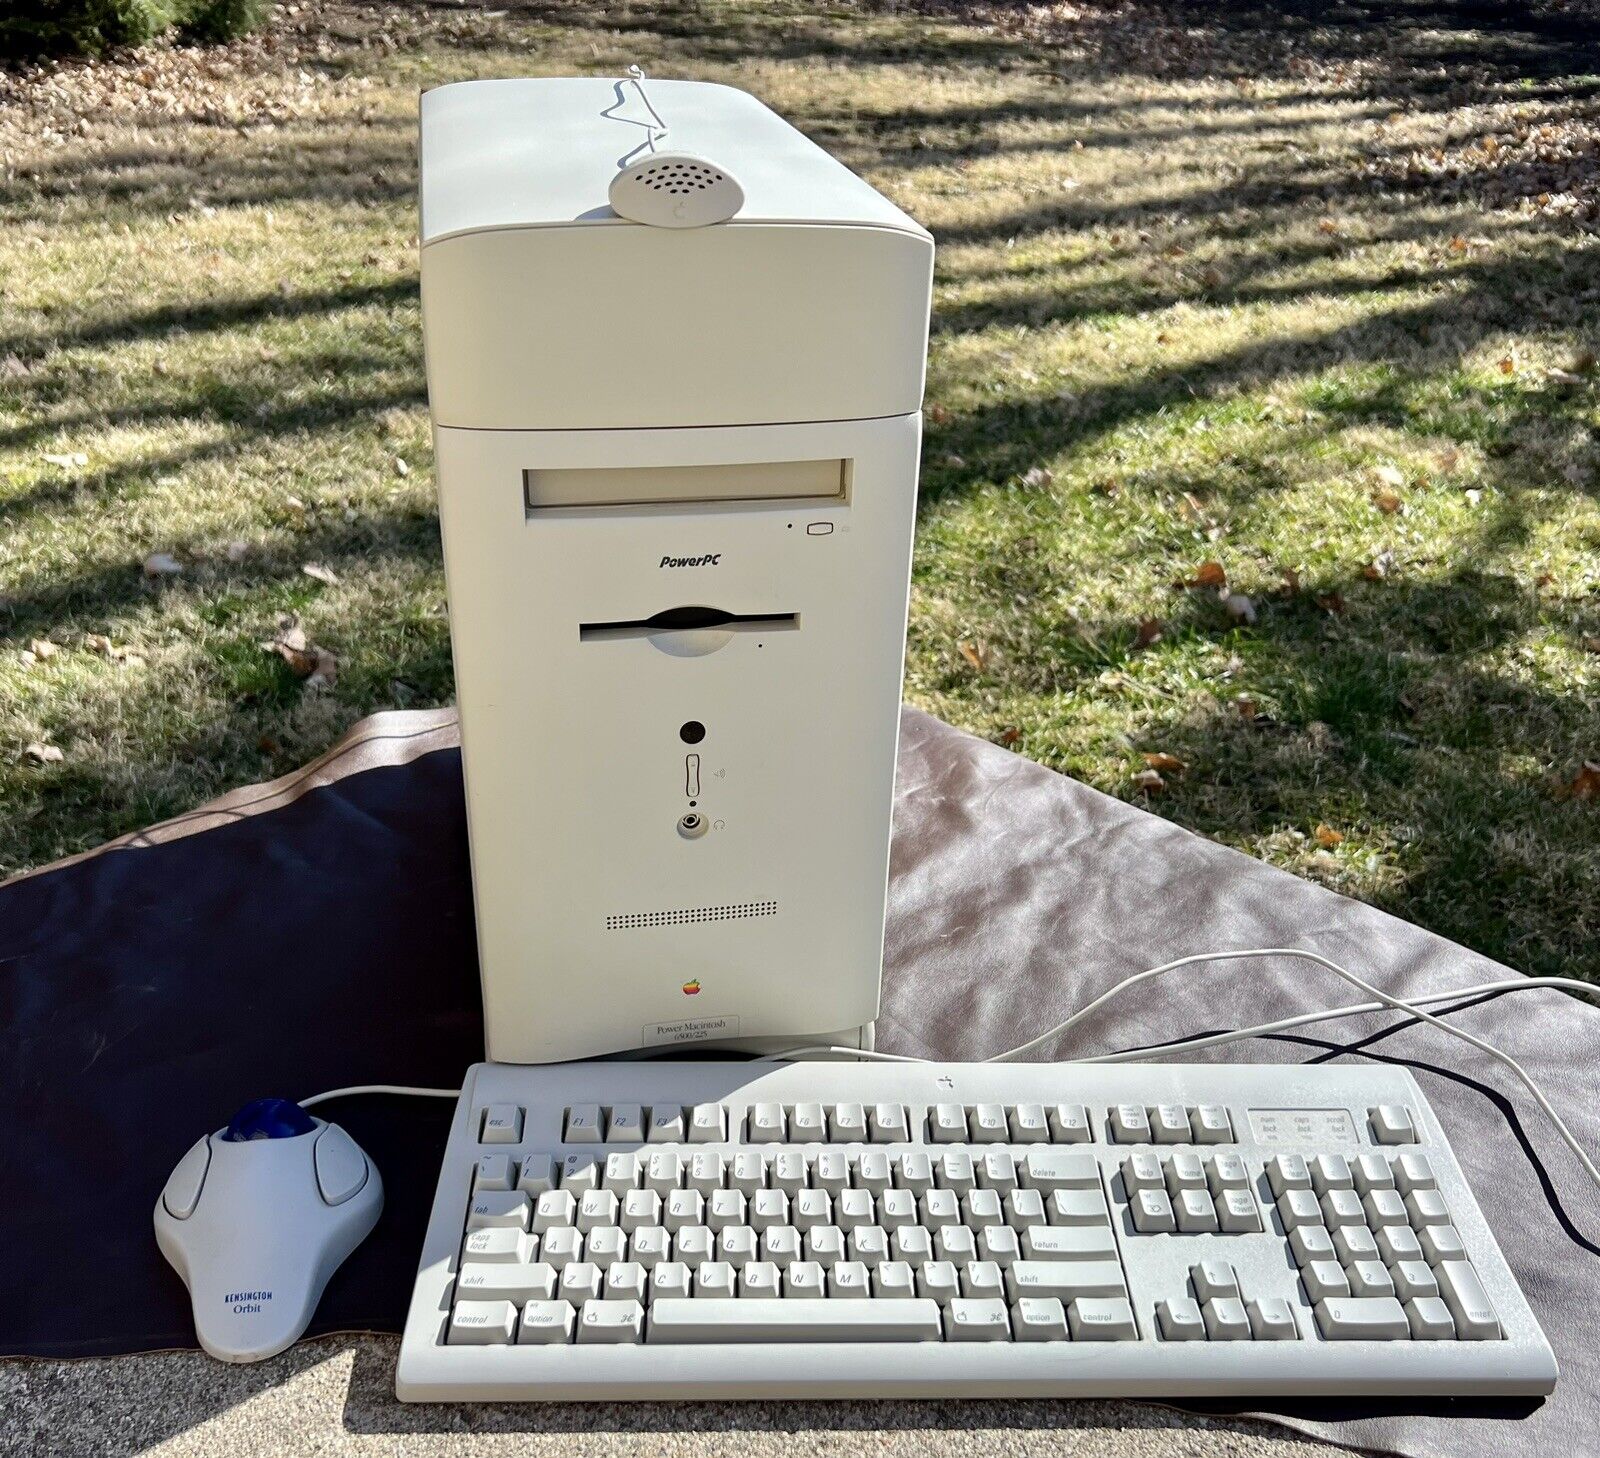 Working Apple PowerPC M3548 Mac Macintosh 225 MHz Desktop Computer